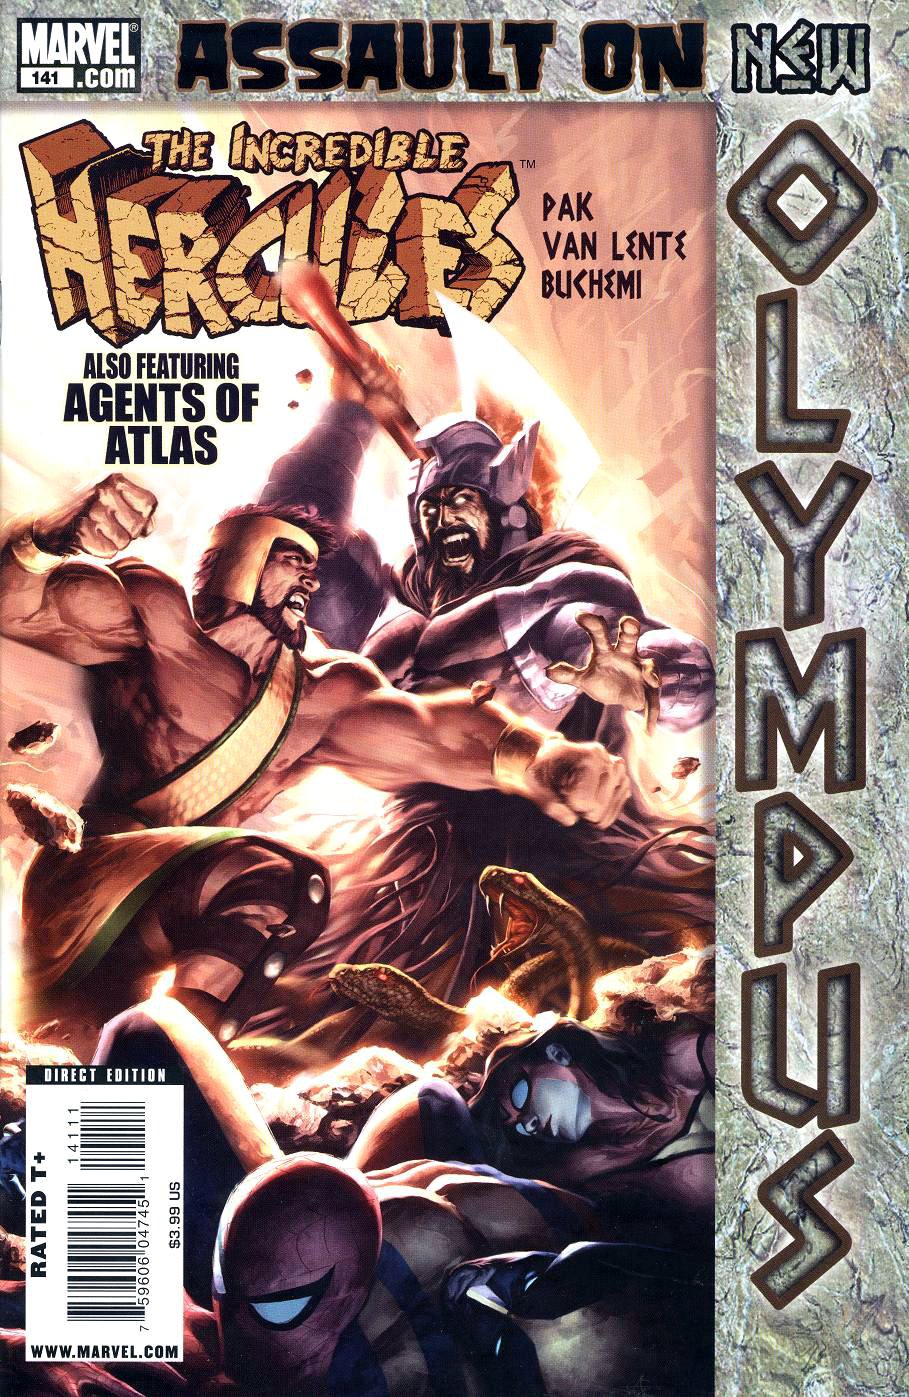 The Incredible Hercules #10